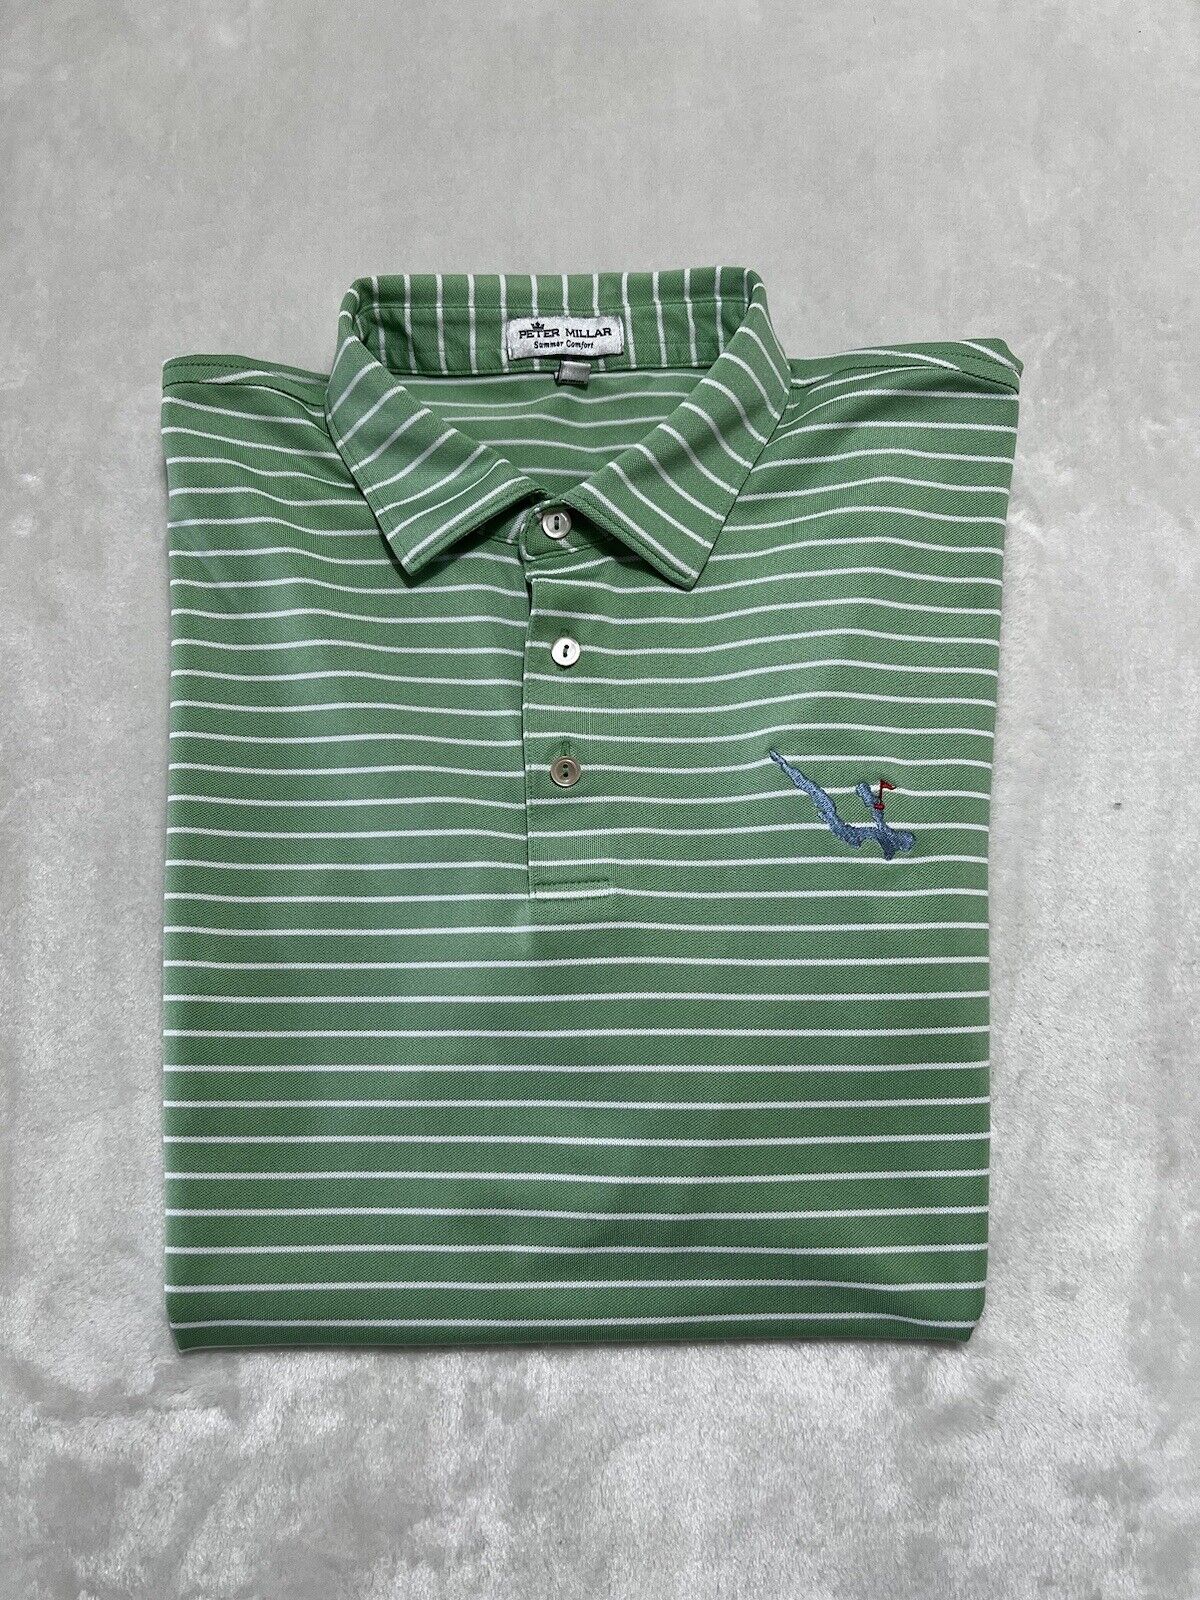 Peter Millar Summer Comfort Short Sleeve Golf Polo Green Stripe Mens Size XL EUC